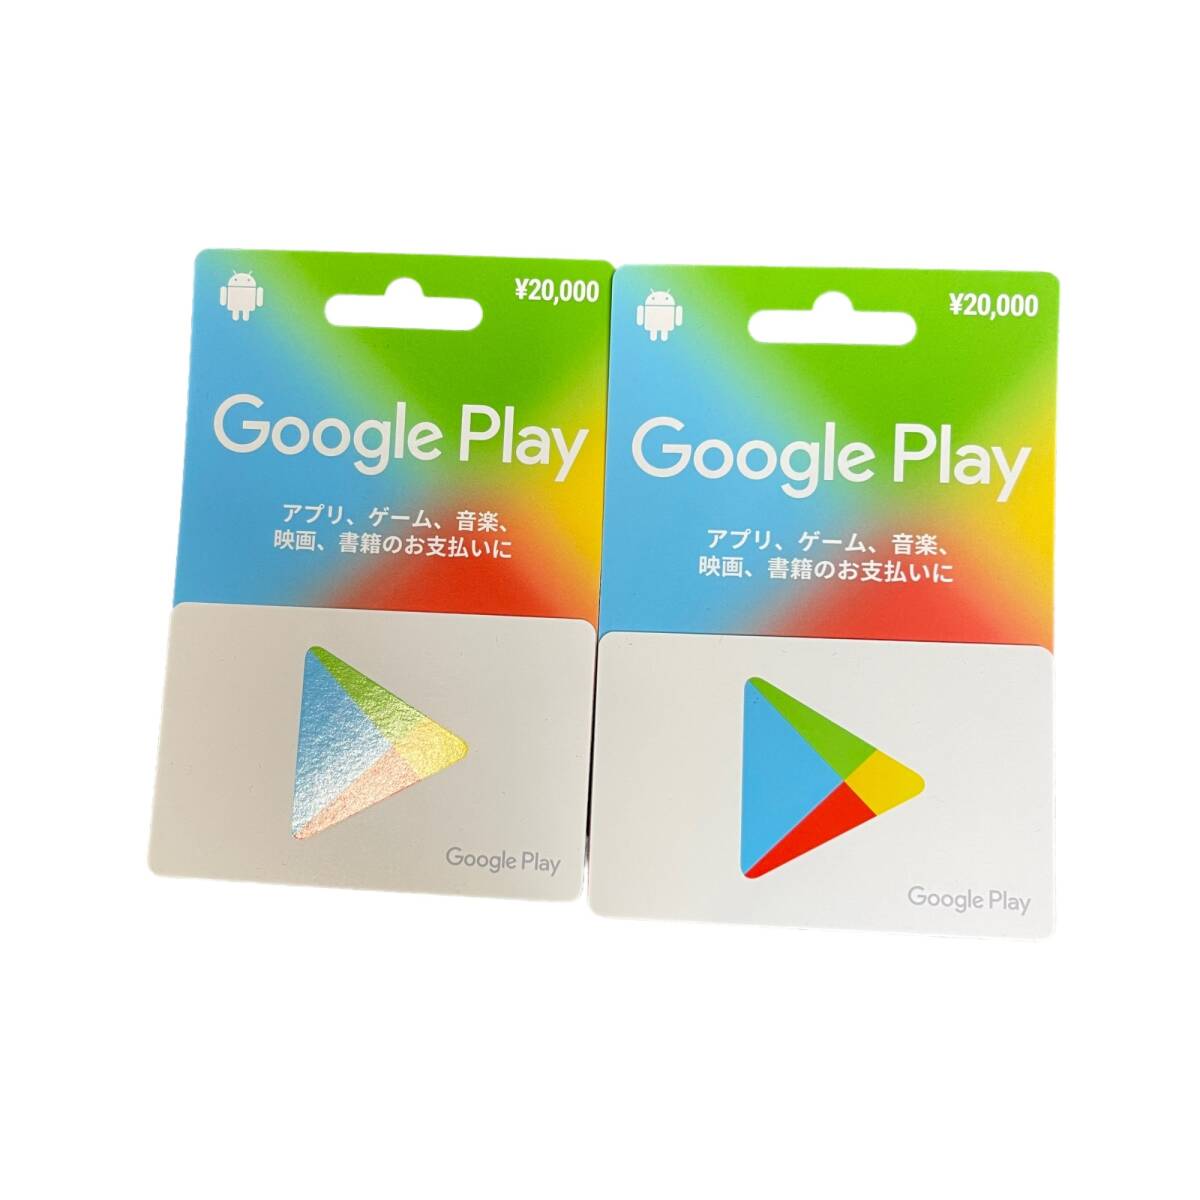 [ не использовался ]Google Play Cardg-gru Play карта 20000 иен x2 листов всего : 40000 иен минут код сообщение возможно L48908RF